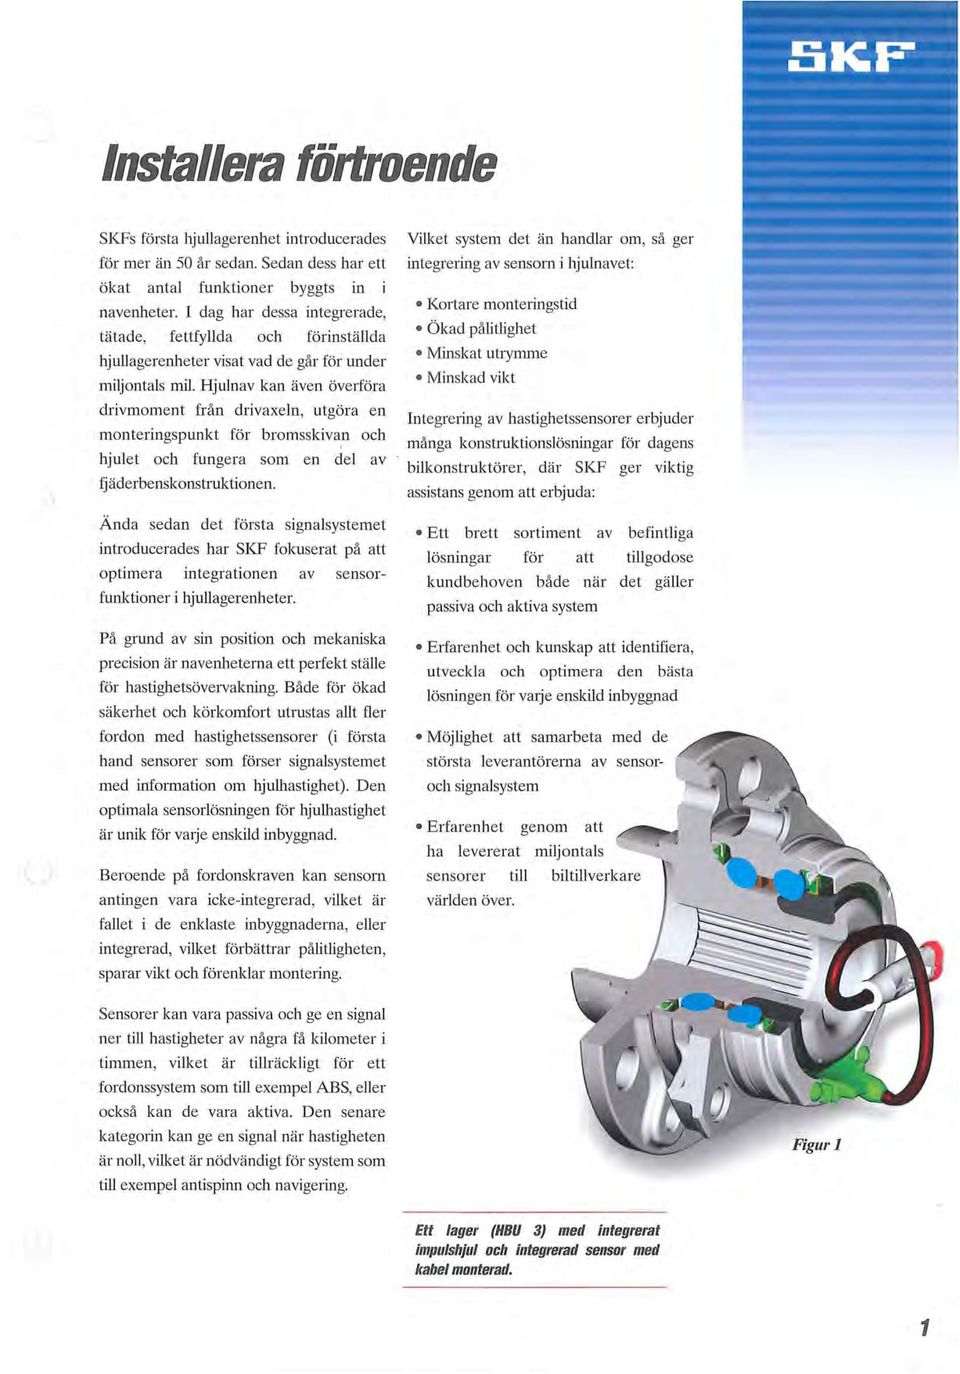 Hjulnav kan även överföra drivmoment från drivaxeln, utgöra en monteringspunkt för bromsskivan och hjulet och fungera som en del av fjäderbenskonstruktionen.